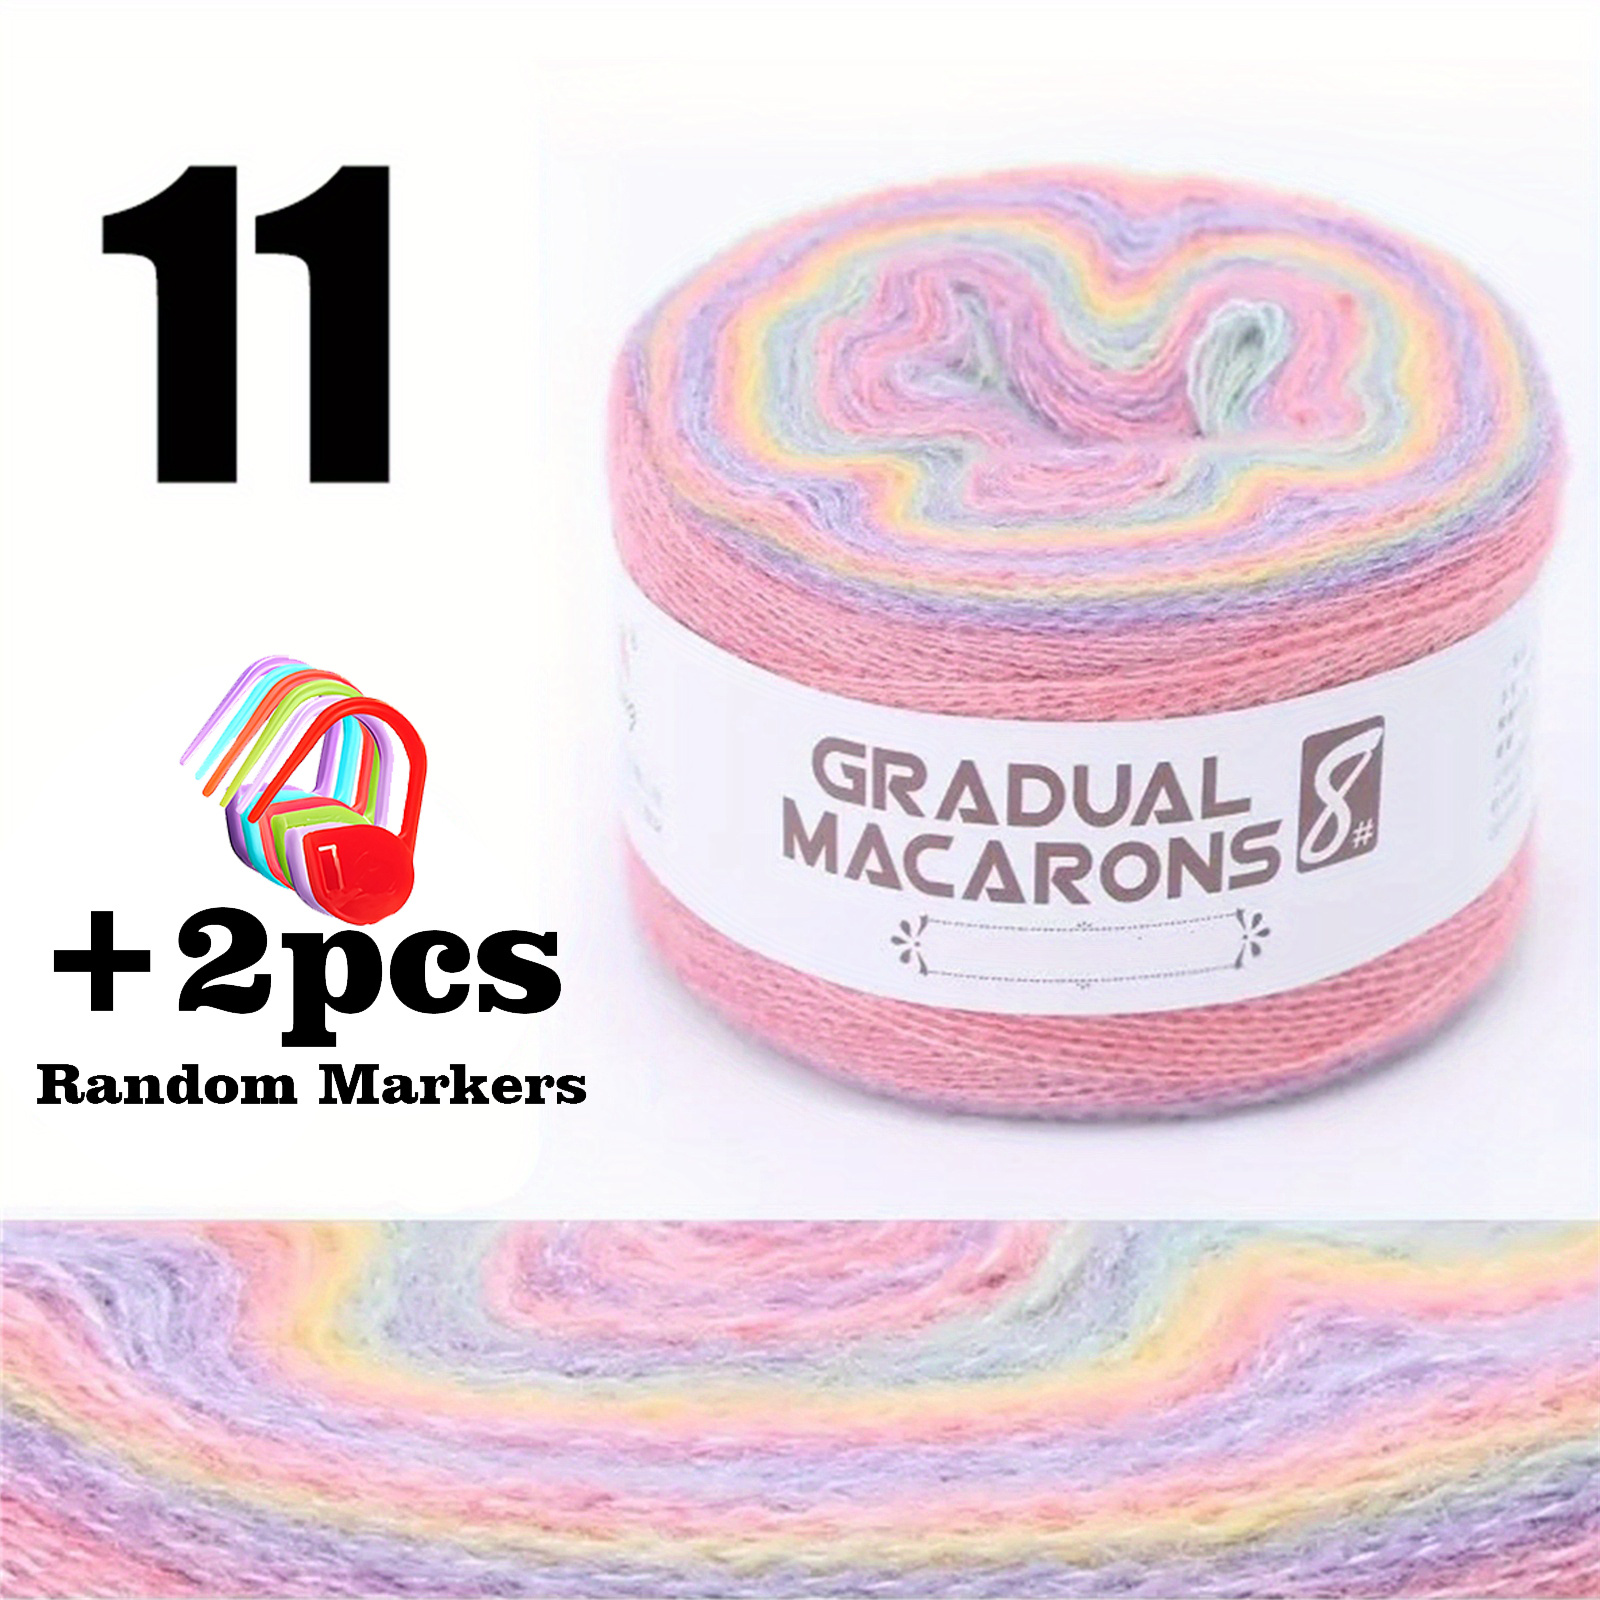  Agatige 25g/Roll Mohair Knitting Yarn, Soft Wool Yarn DIY Shawl  Scarf Socks Crocheting Supplies(Purple)